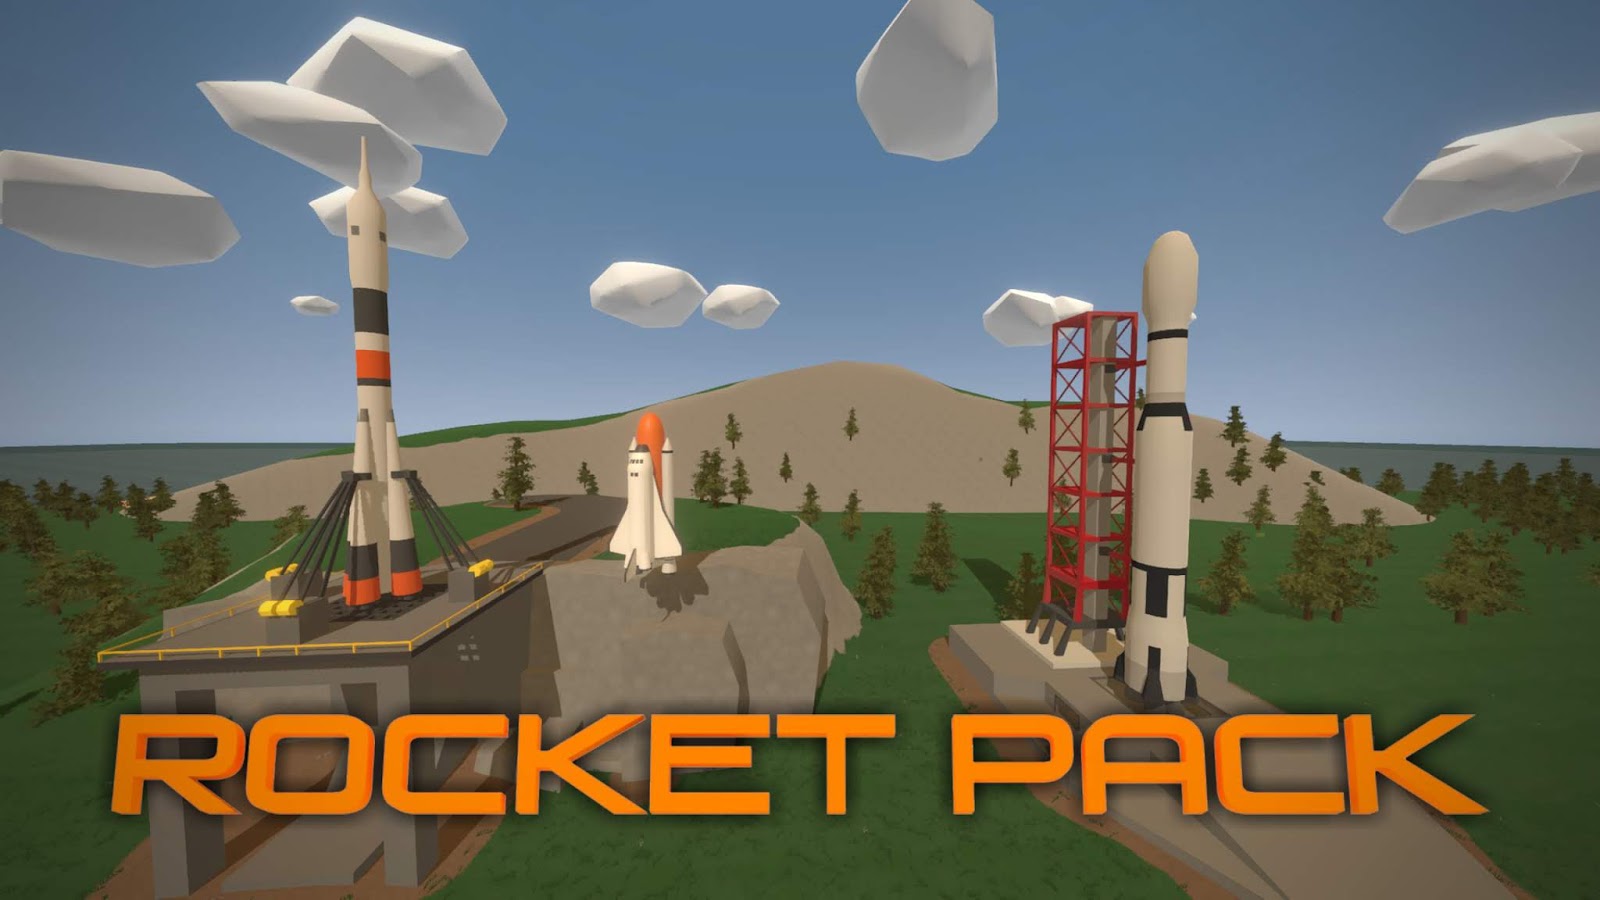 Rocket pack